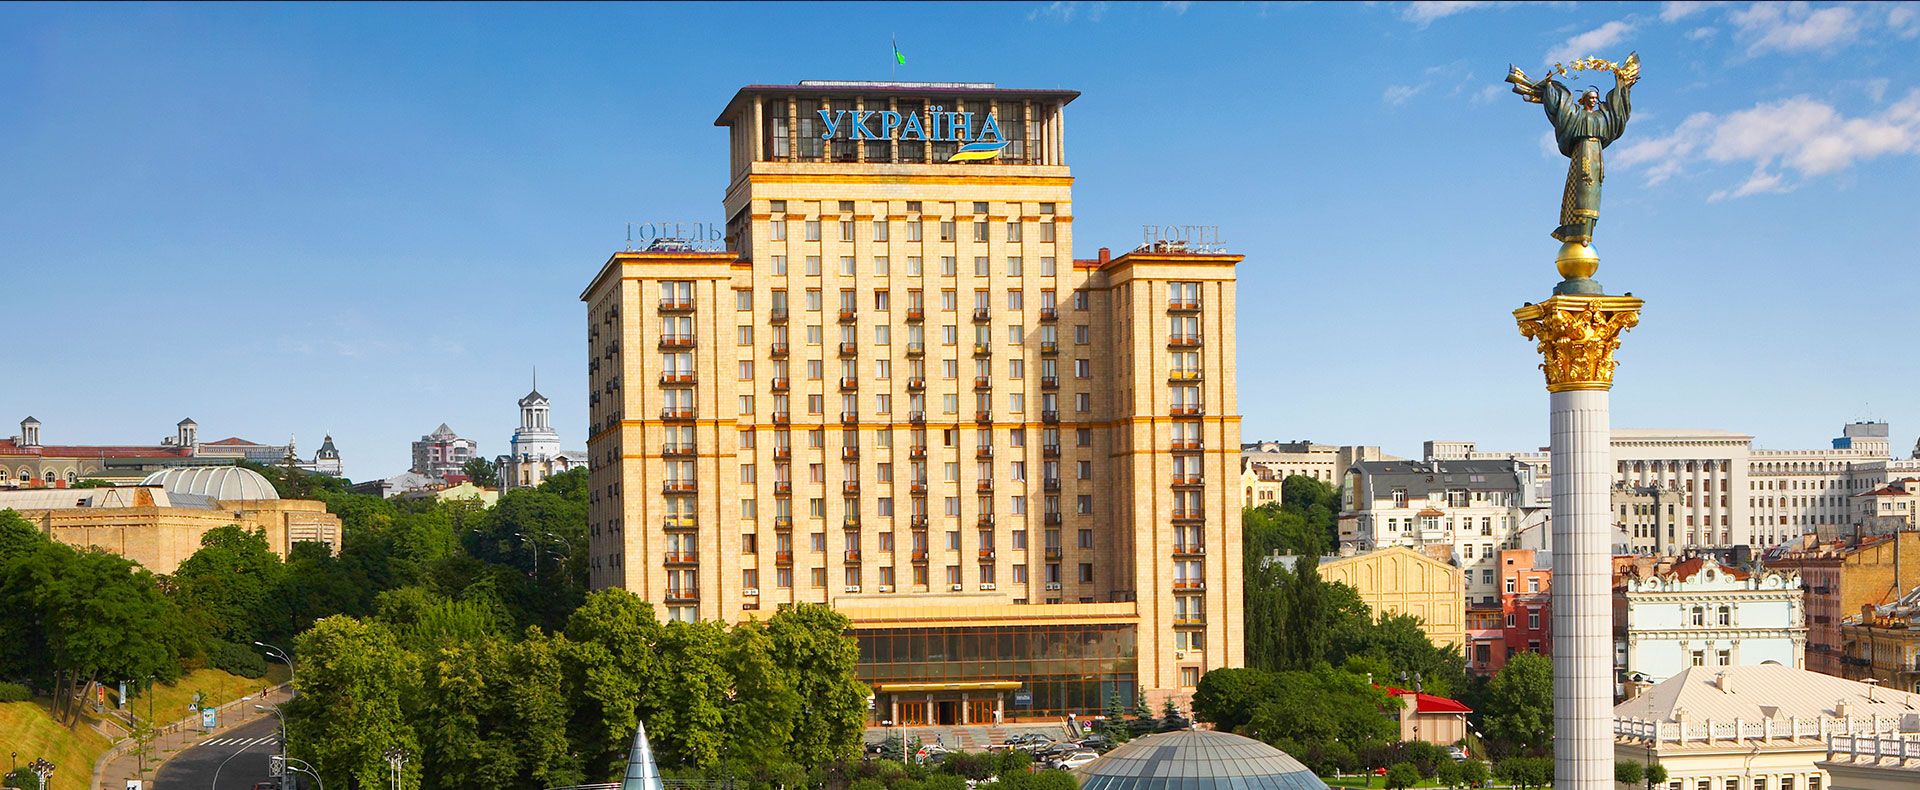 Отель "Украина" уже в списке приватизации